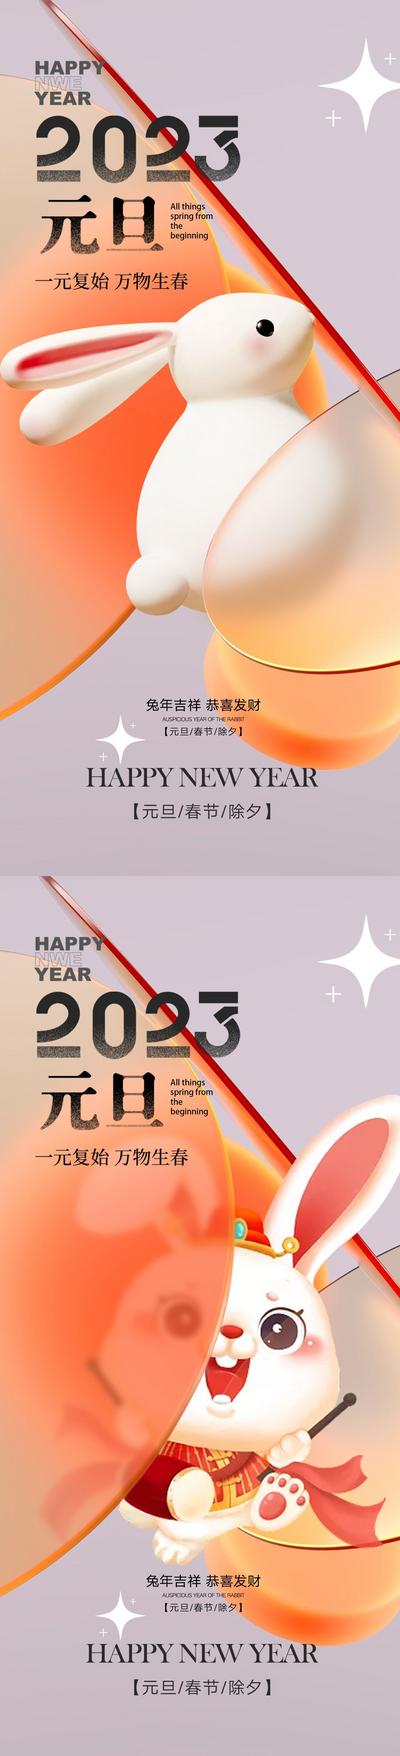 南门网 海报 公历节日 元旦节 兔年 新年 2023 兔子 毛玻璃